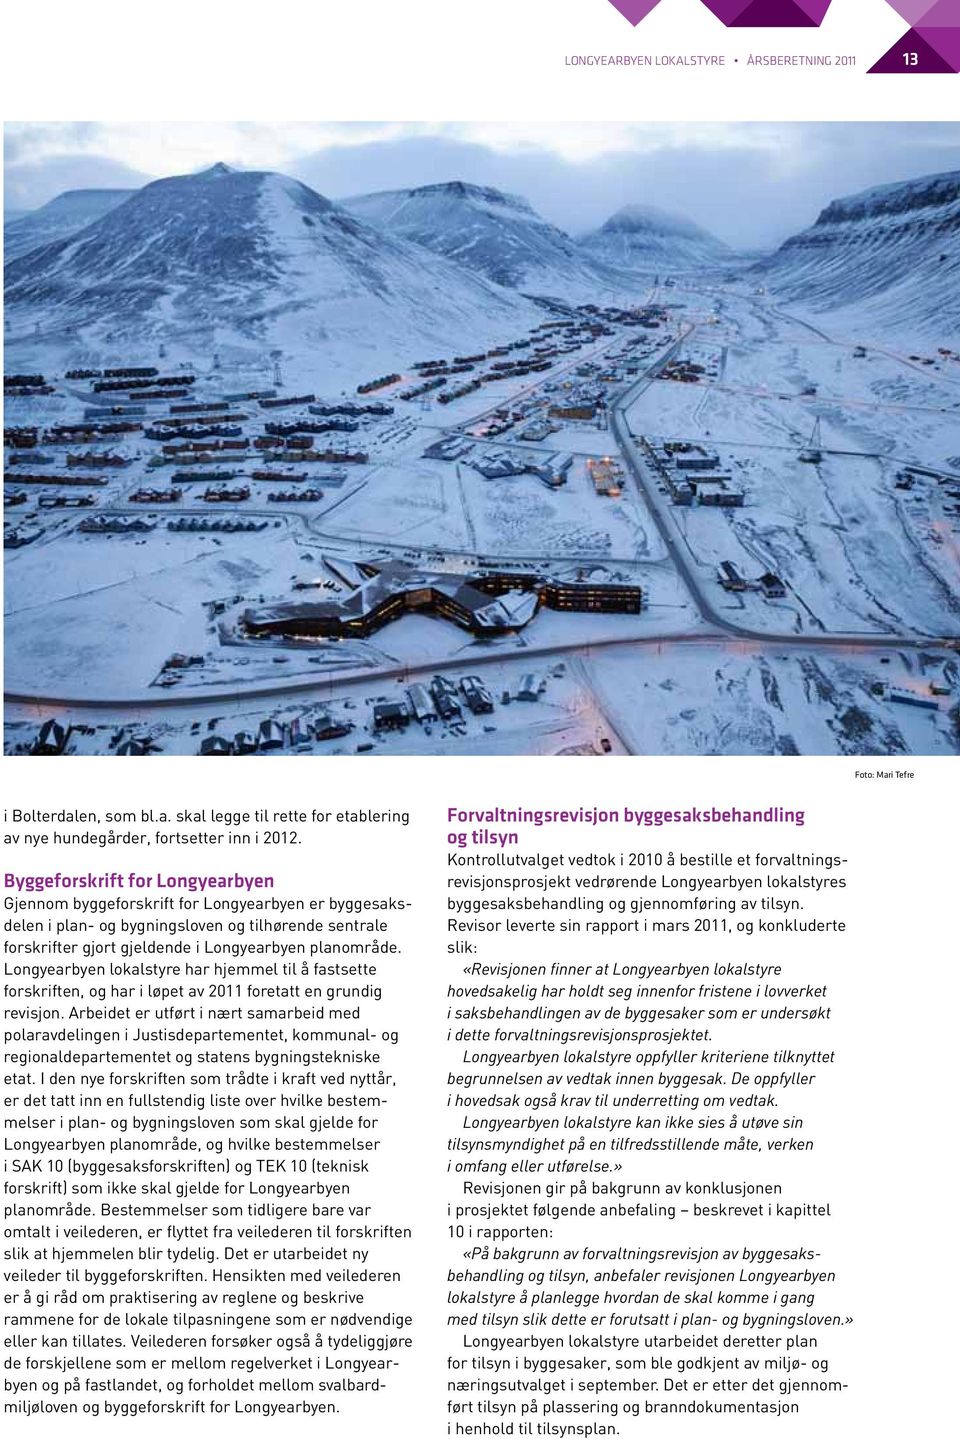 Longyearbyen lokalstyre har hjemmel til å fastsette forskriften, og har i løpet av 2011 foretatt en grundig revisjon.